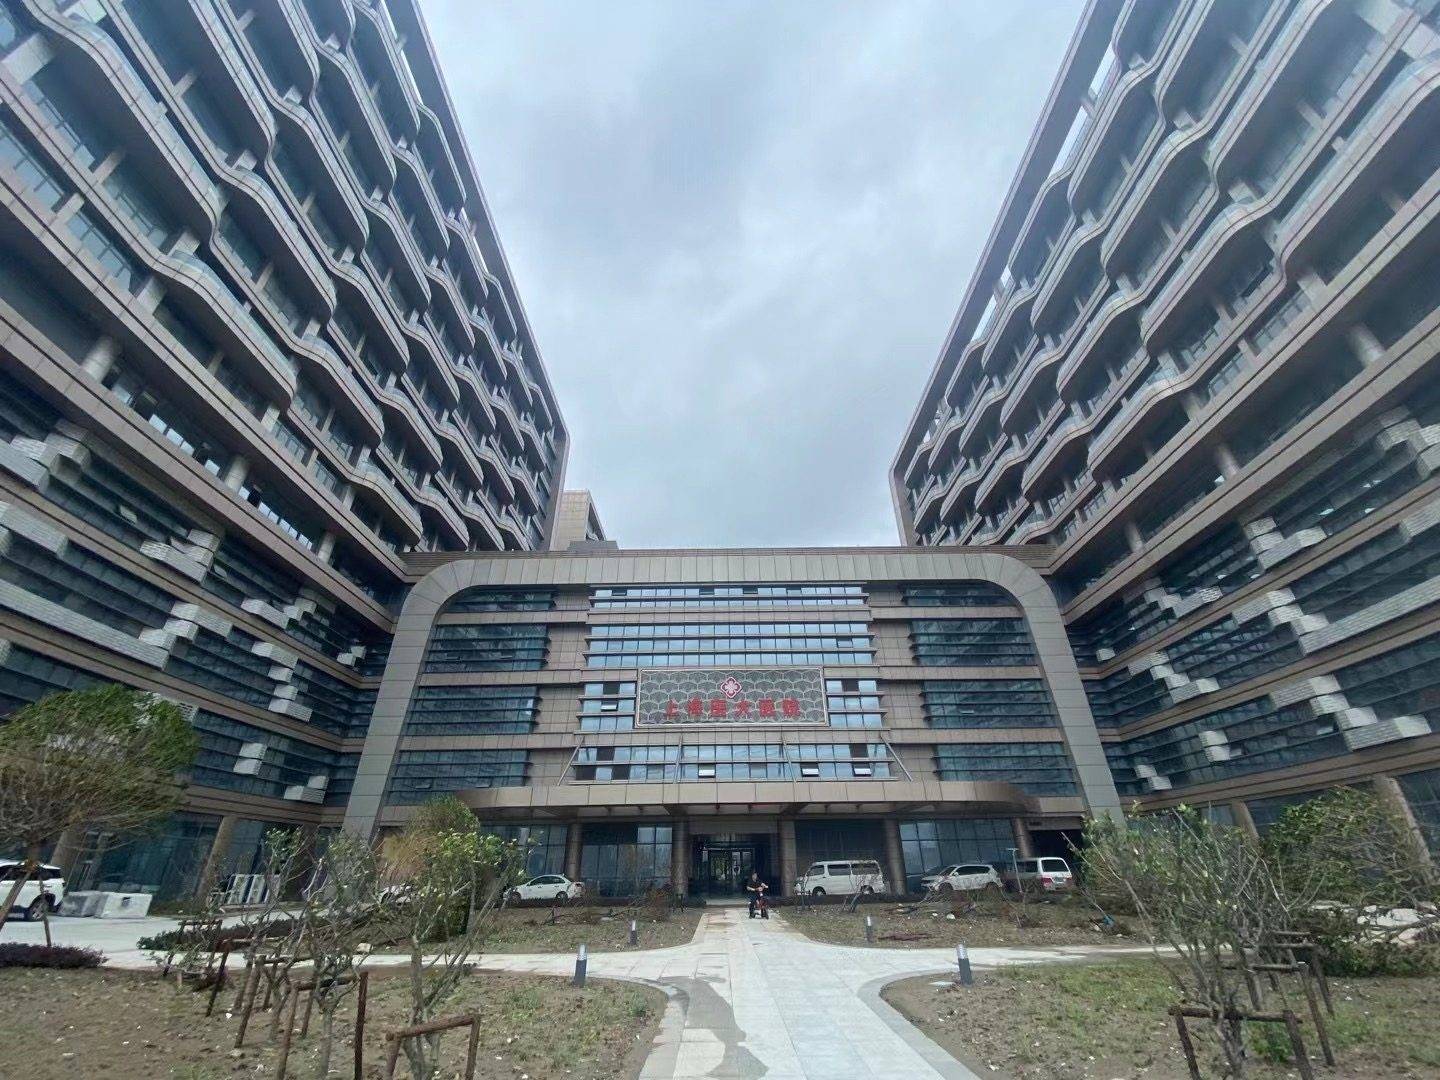 祝贺!上海远大医谷海尔中央空调项目交付验收